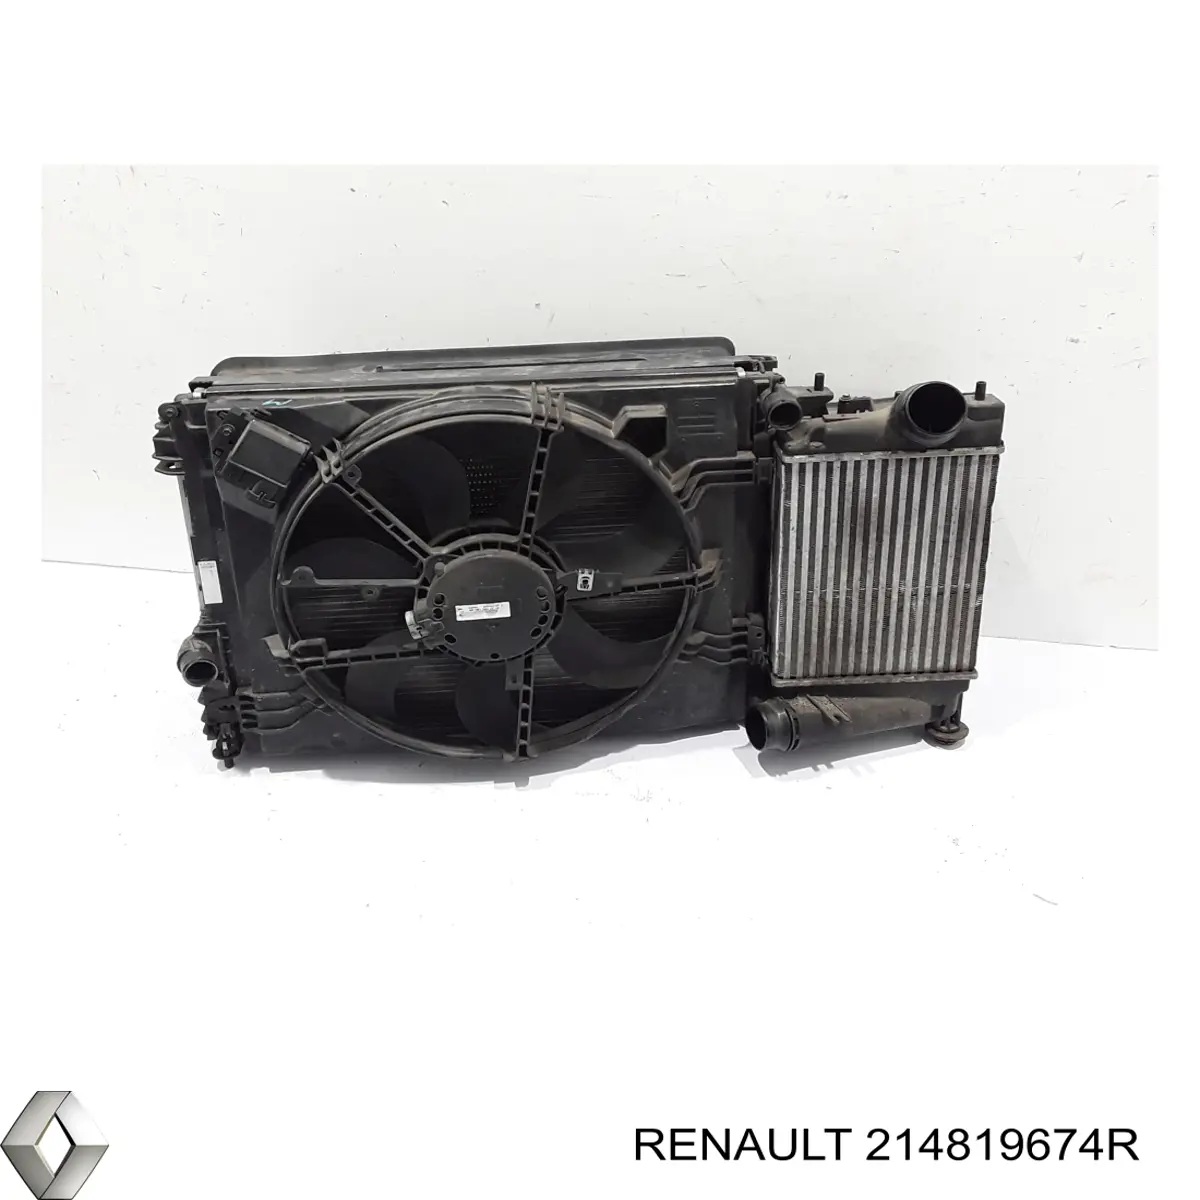 Difusor de radiador, ventilador de refrigeración, condensador del aire acondicionado, completo con motor y rodete para Renault Scenic (R9)